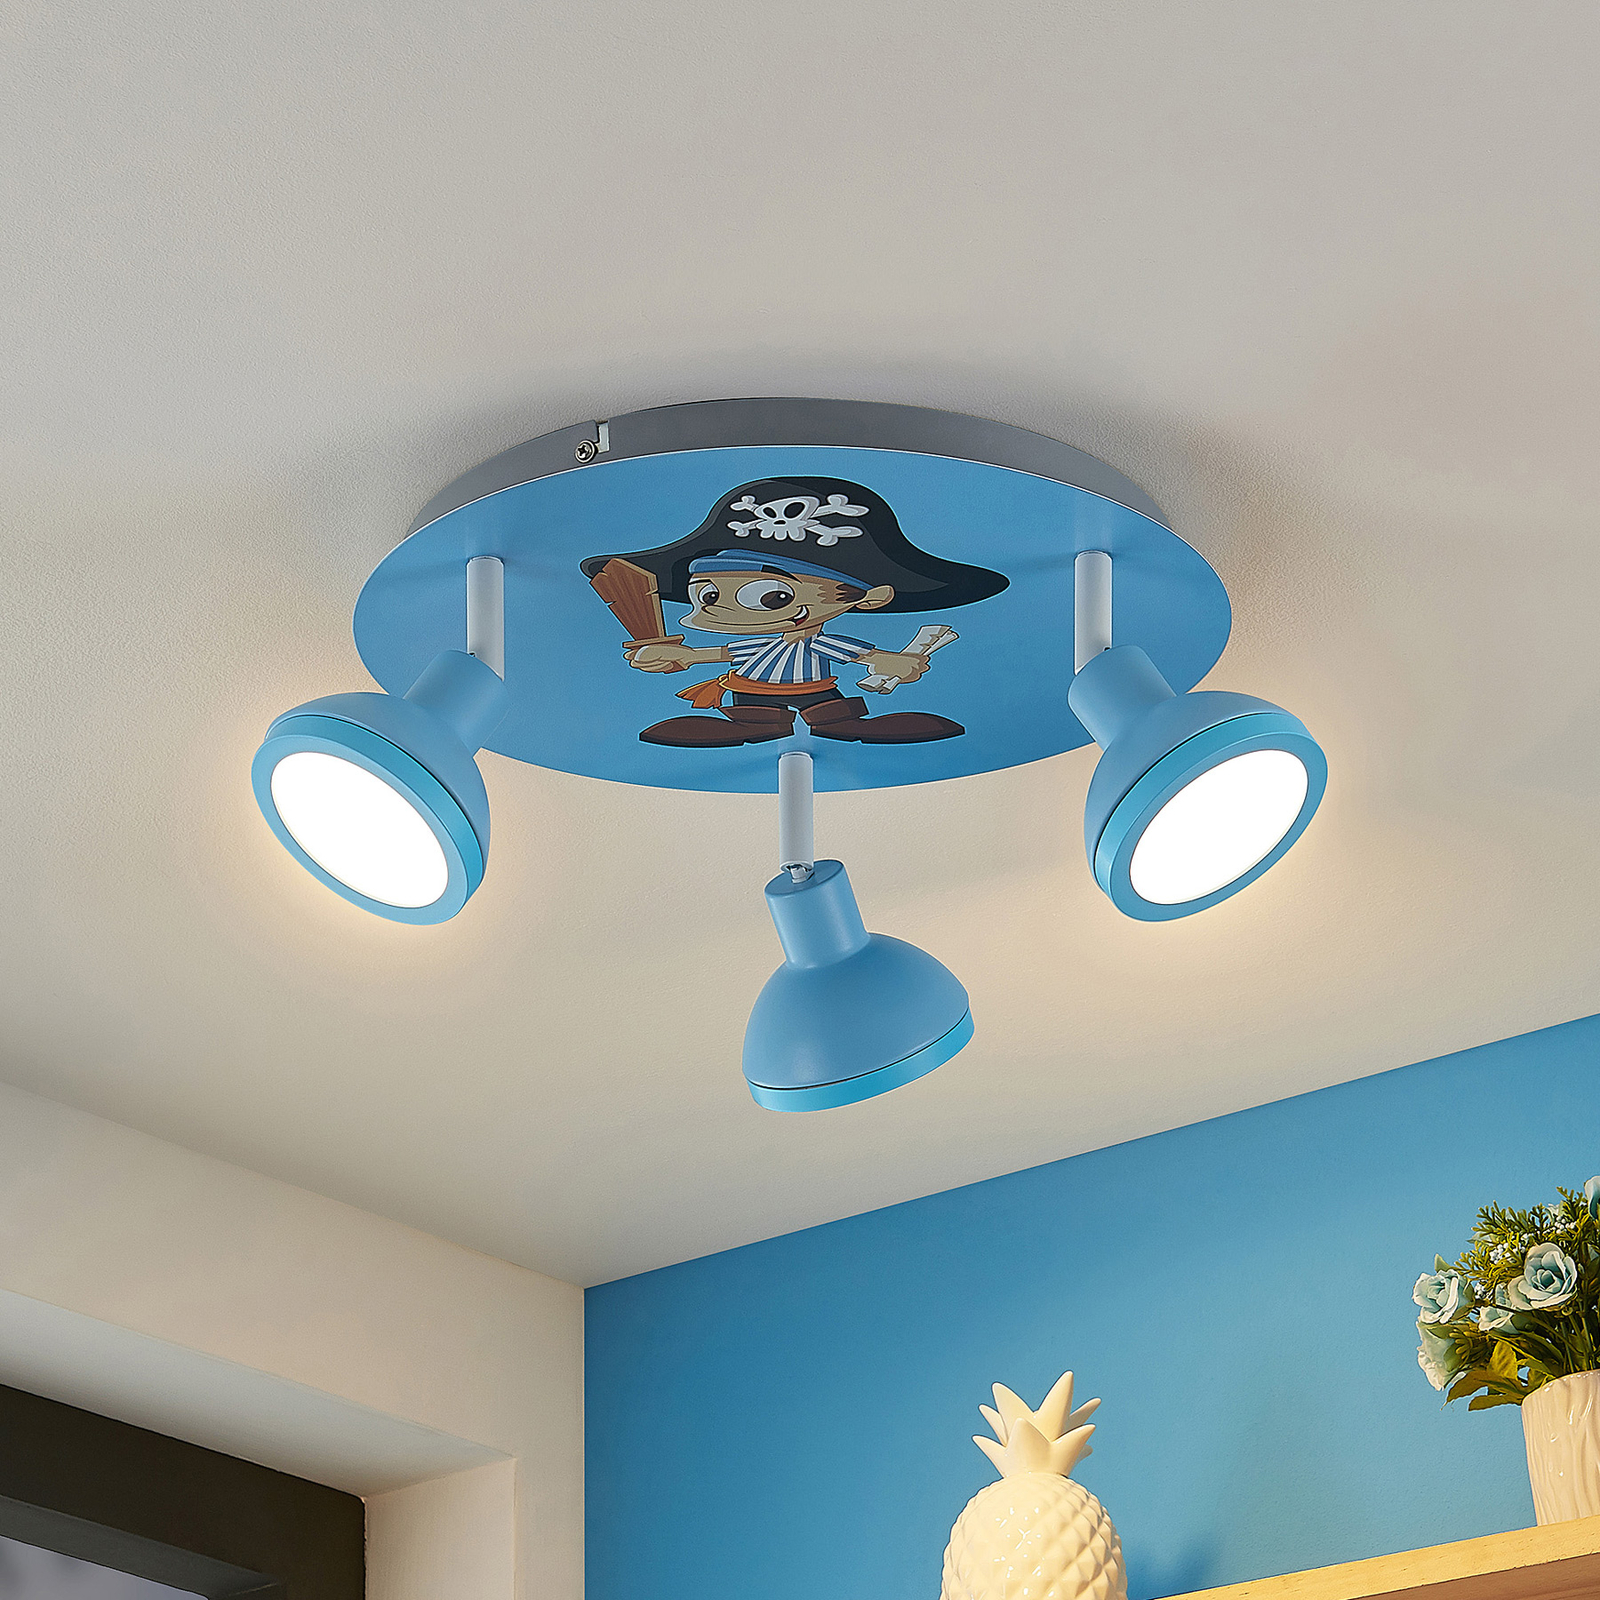 Kinderzimmer Deckenleuchte Hängelampe Leuchte Lampe Decke Fassung E27 Pirat 